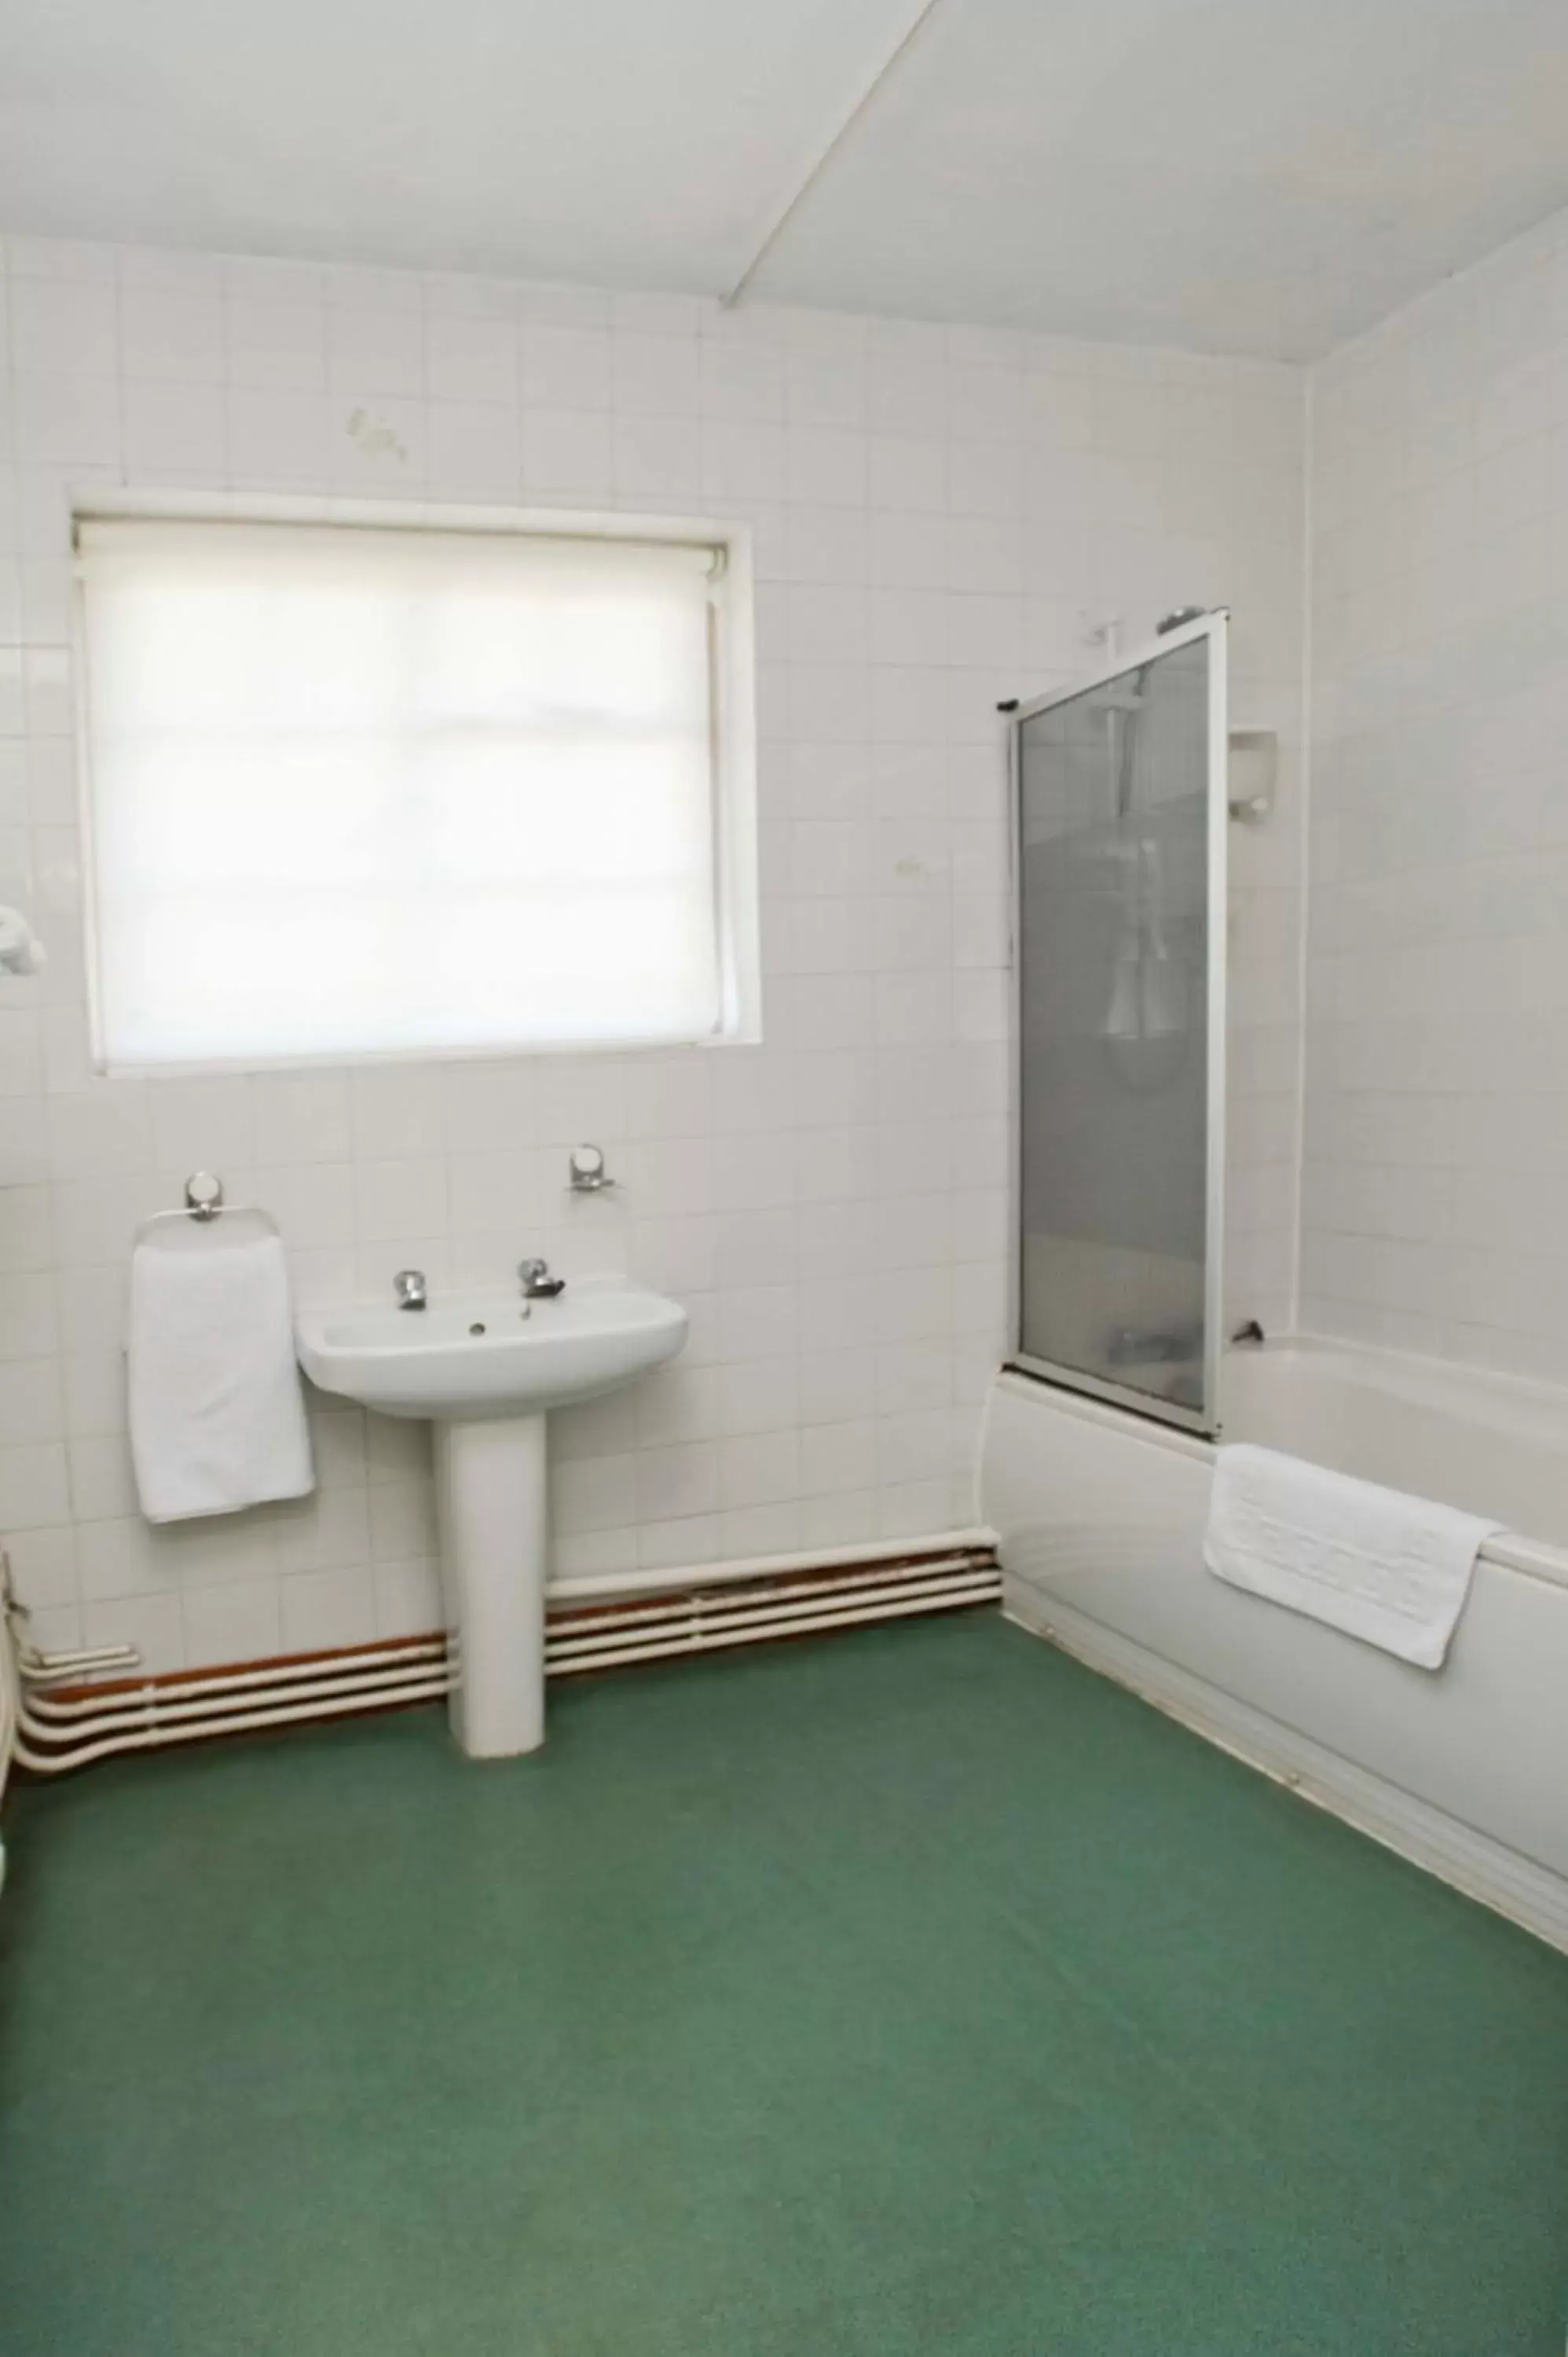 Bathroom in Tree Hotel at Iffley